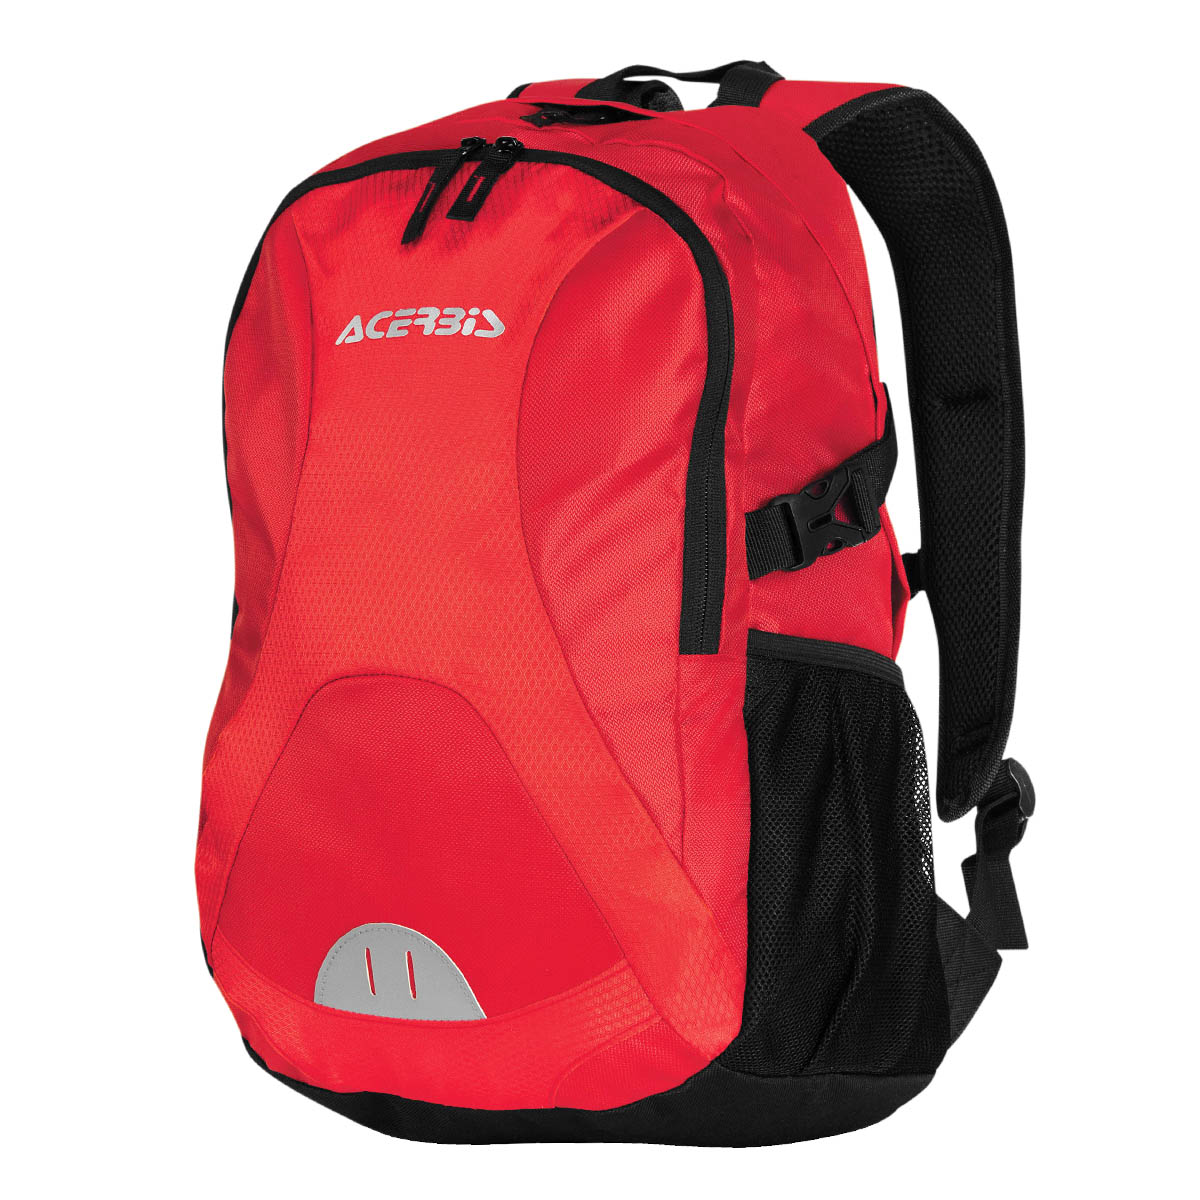 Acerbis Backpack Profile Red/Black